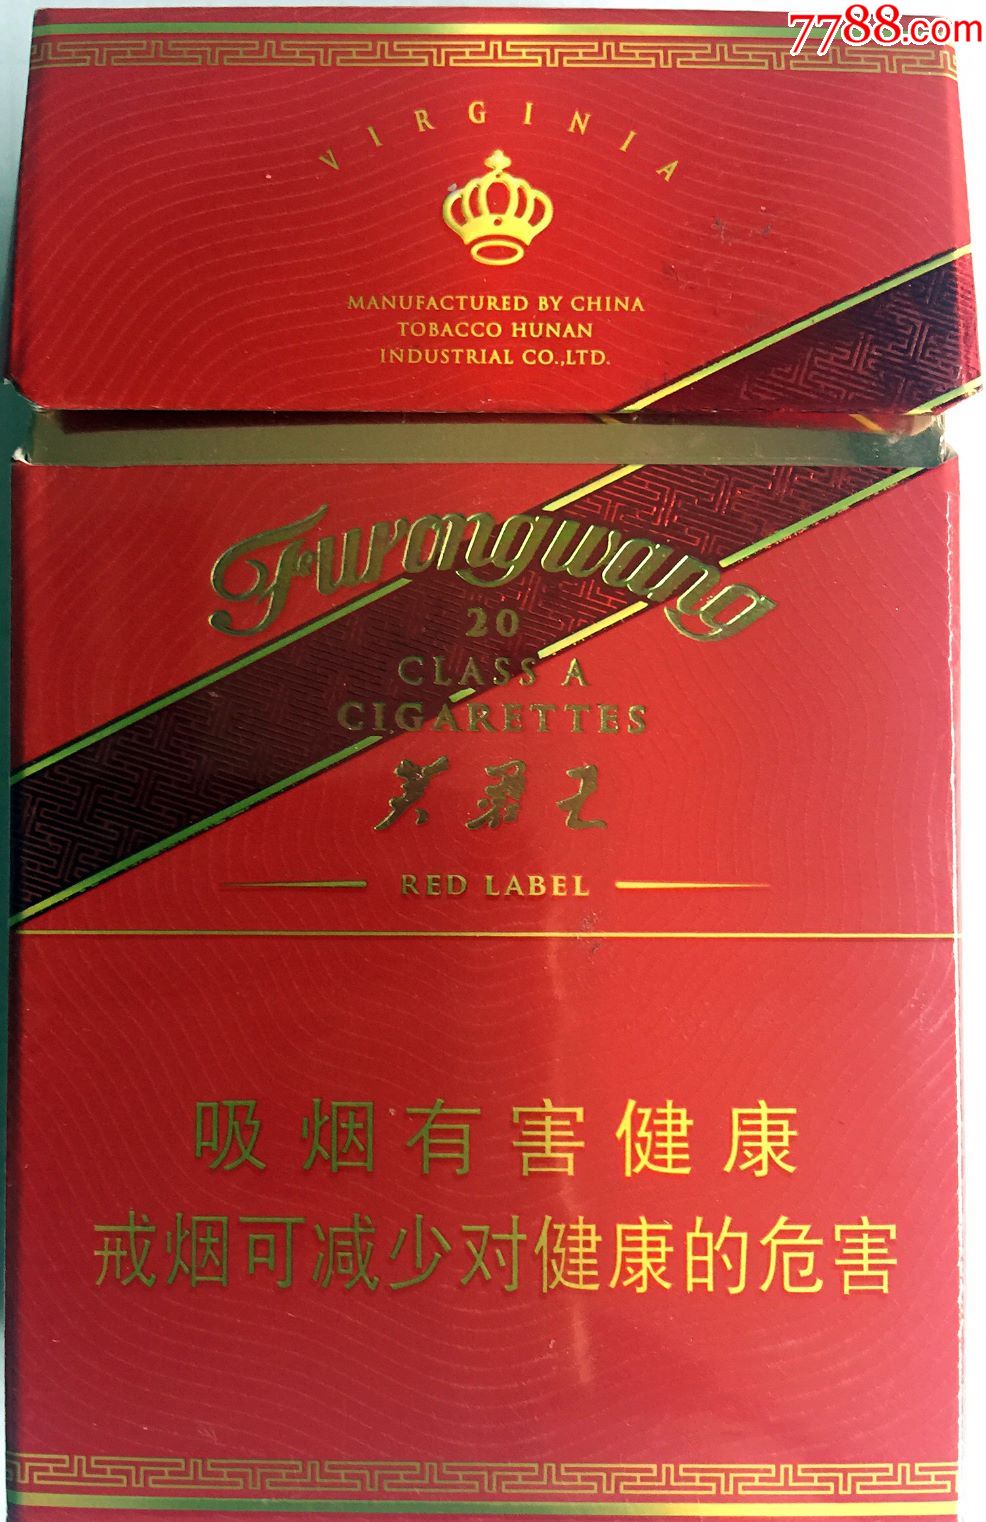 芙蓉王香烟红色图片